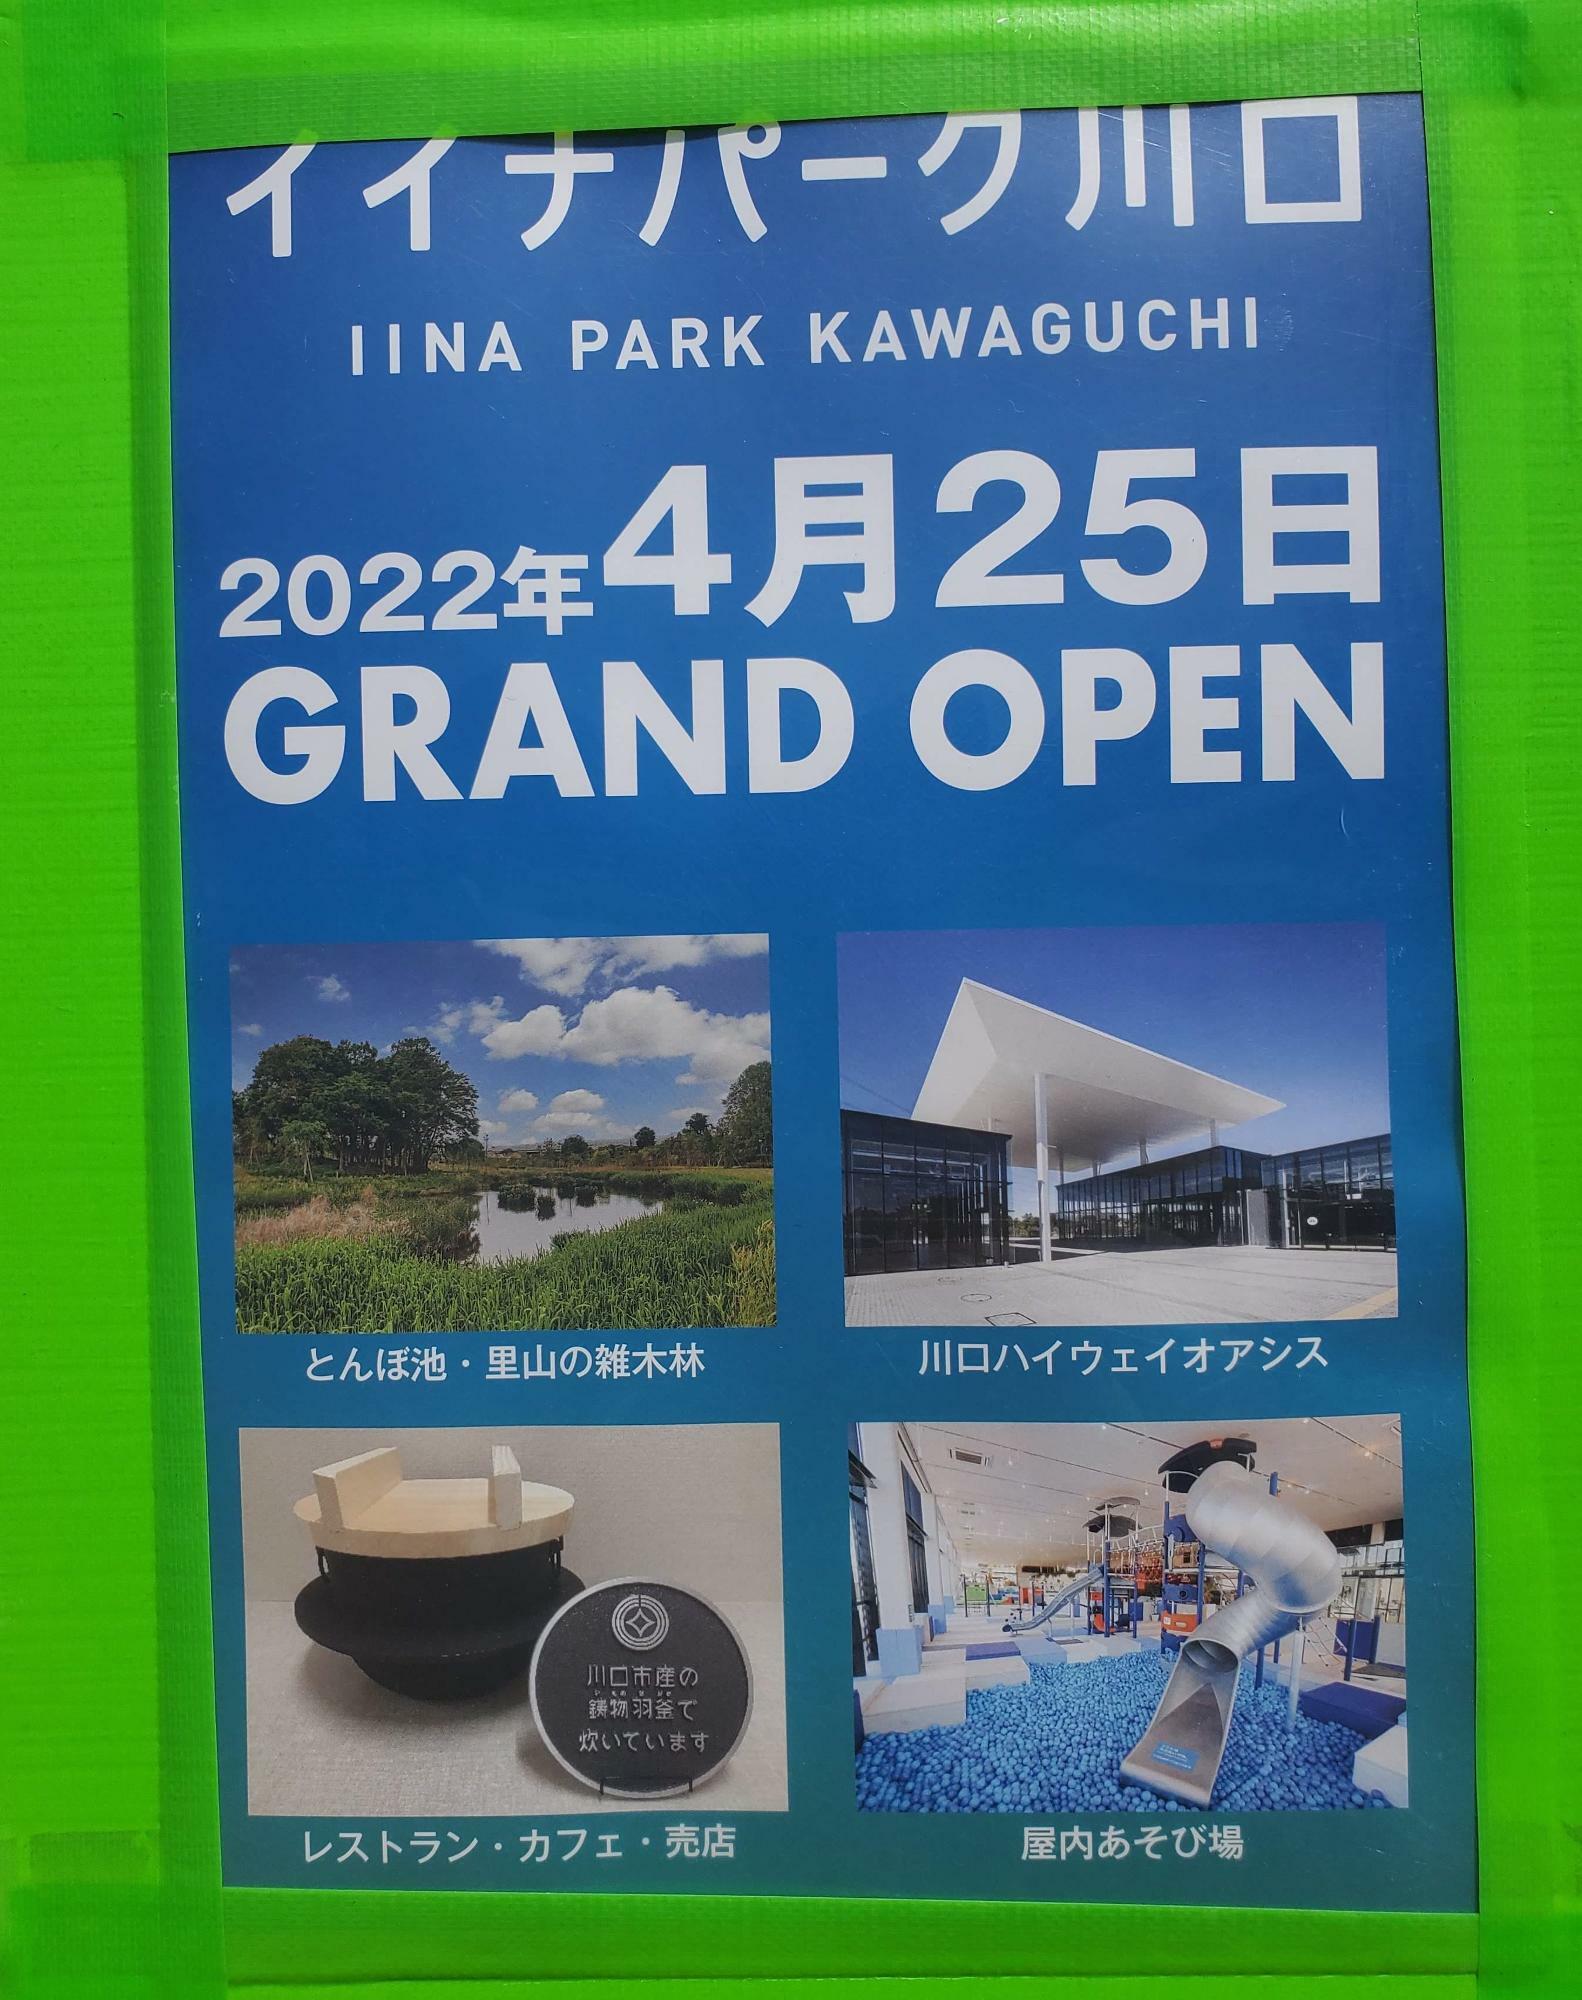 園内にはグランドオープンのポスターが掲示されていました。